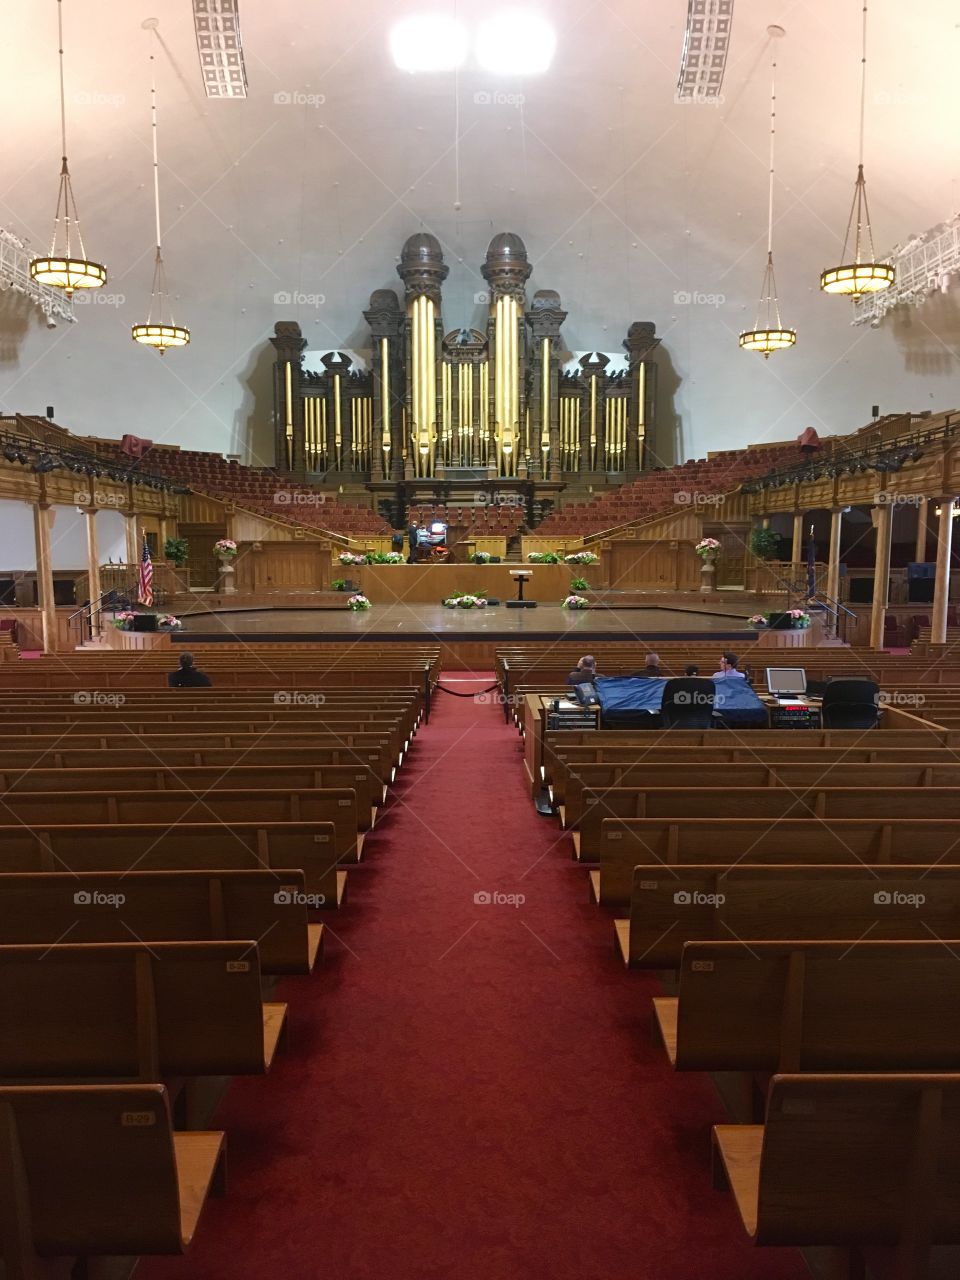 Mormon tabernacle 